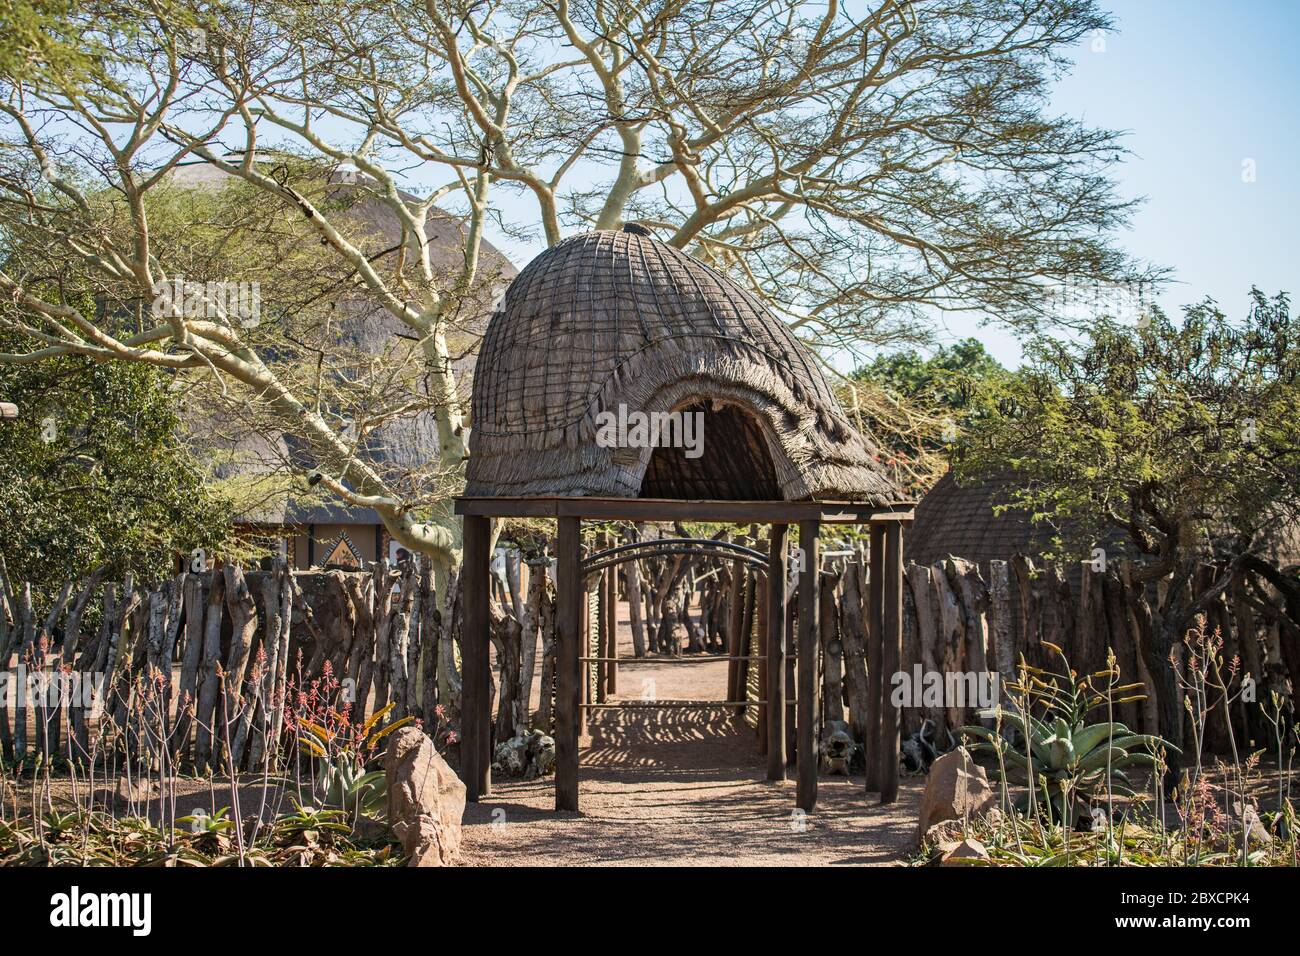 Das Kulturelle Erlebnis Im Zulu Village Stockfoto